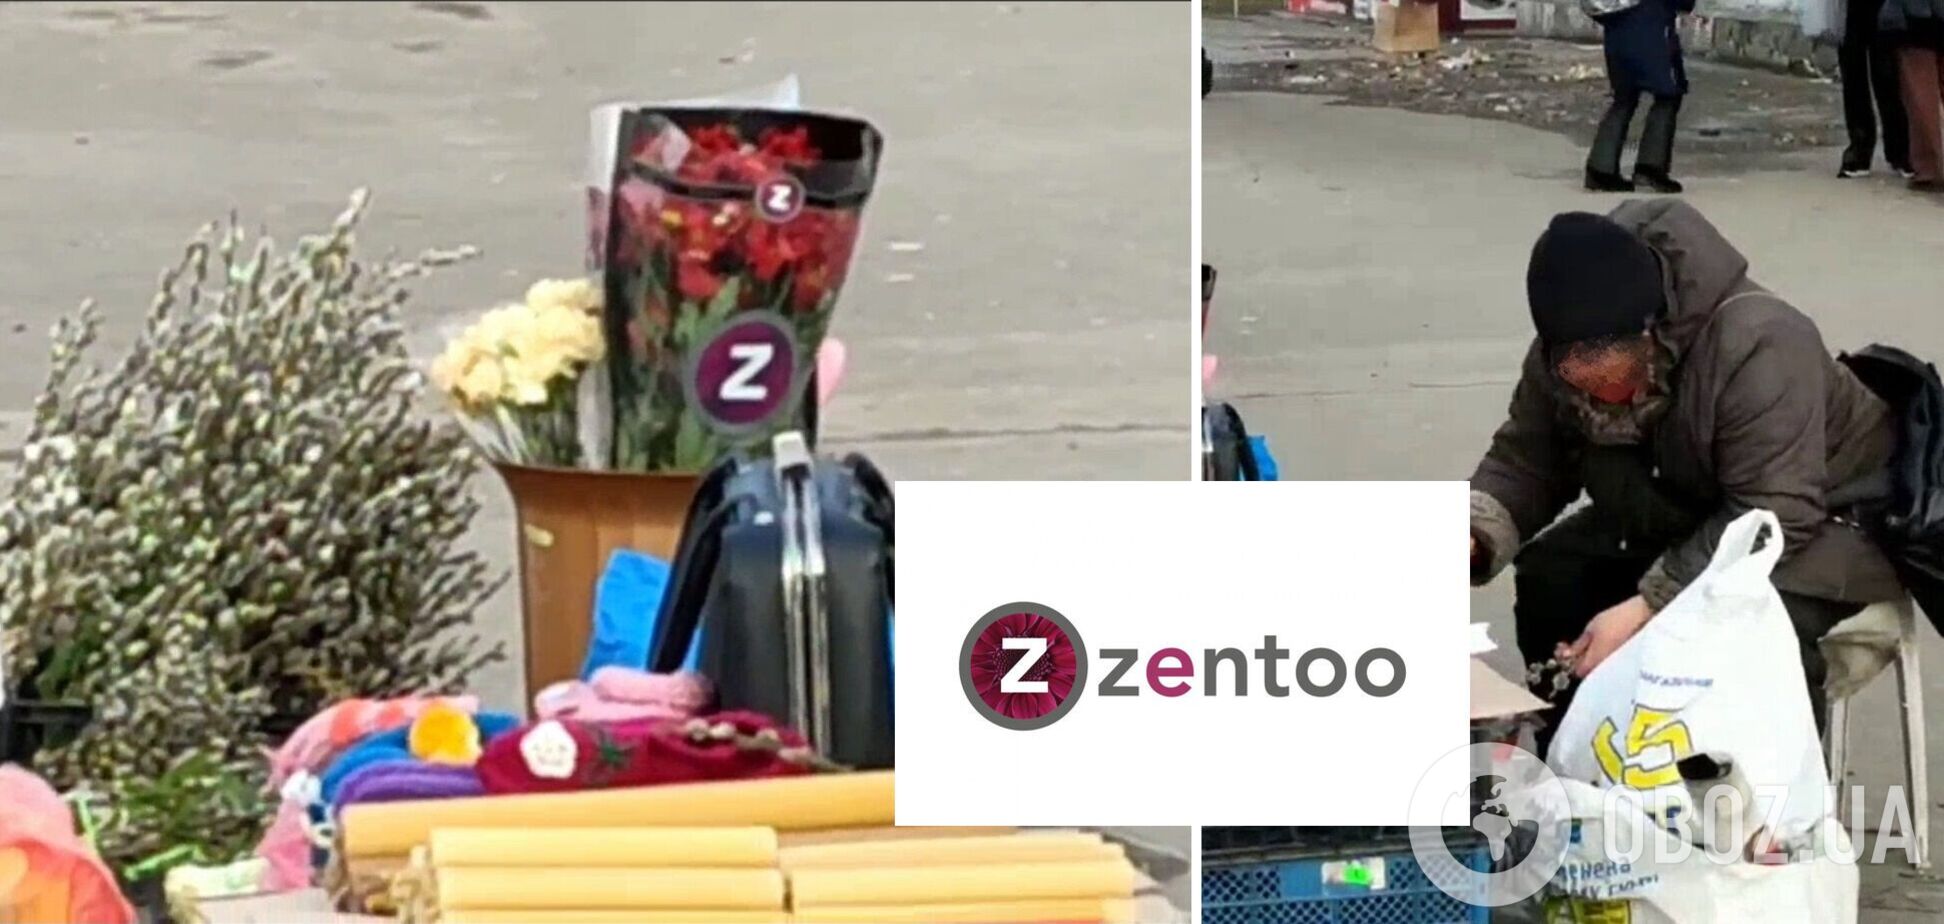 Женщина продавала цветы с буквой Z на упаковке